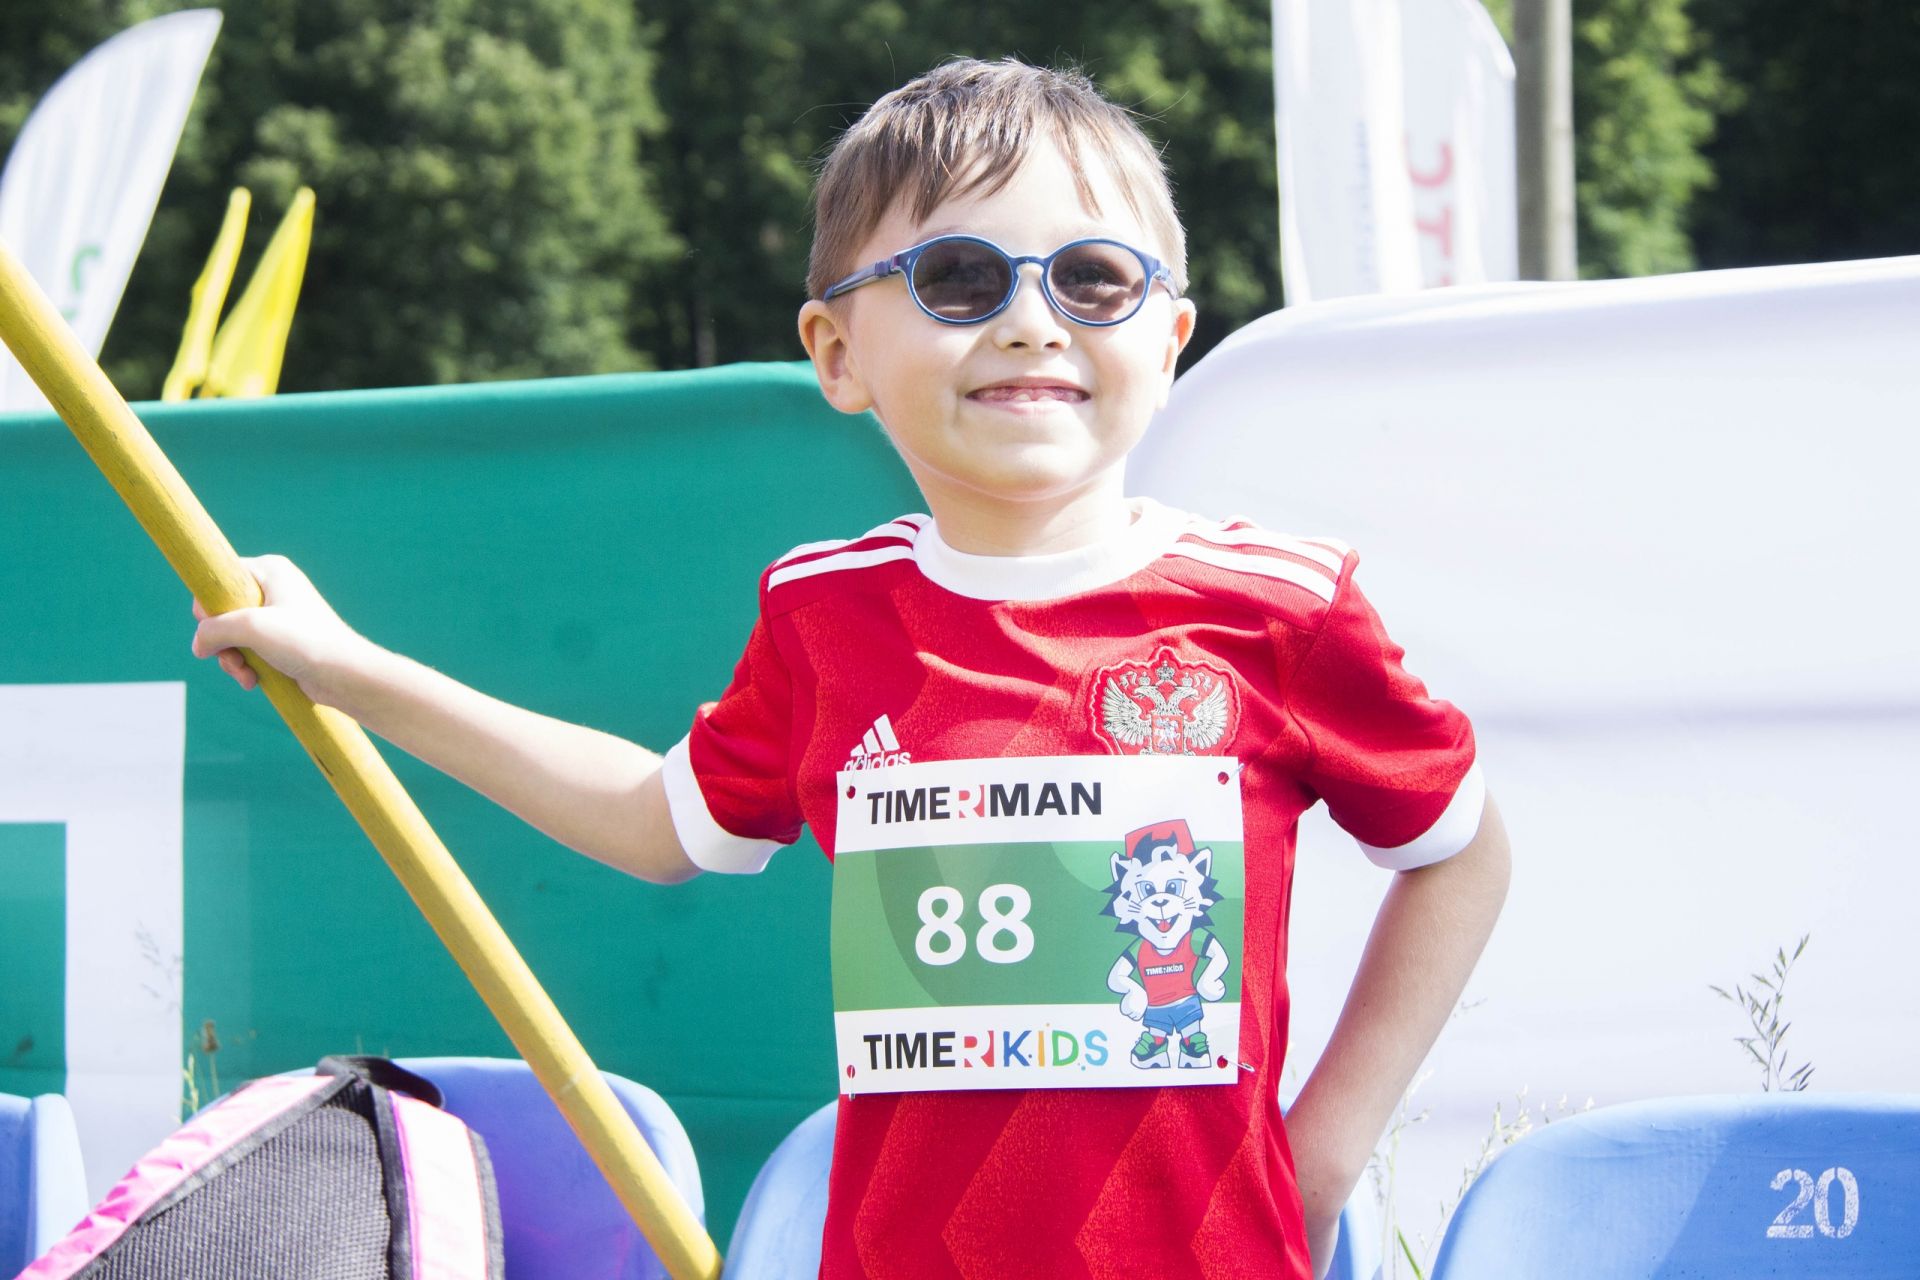 Чемпионы и любители спорта в СК "Маяк": Олимпийский день в Зеленодольске